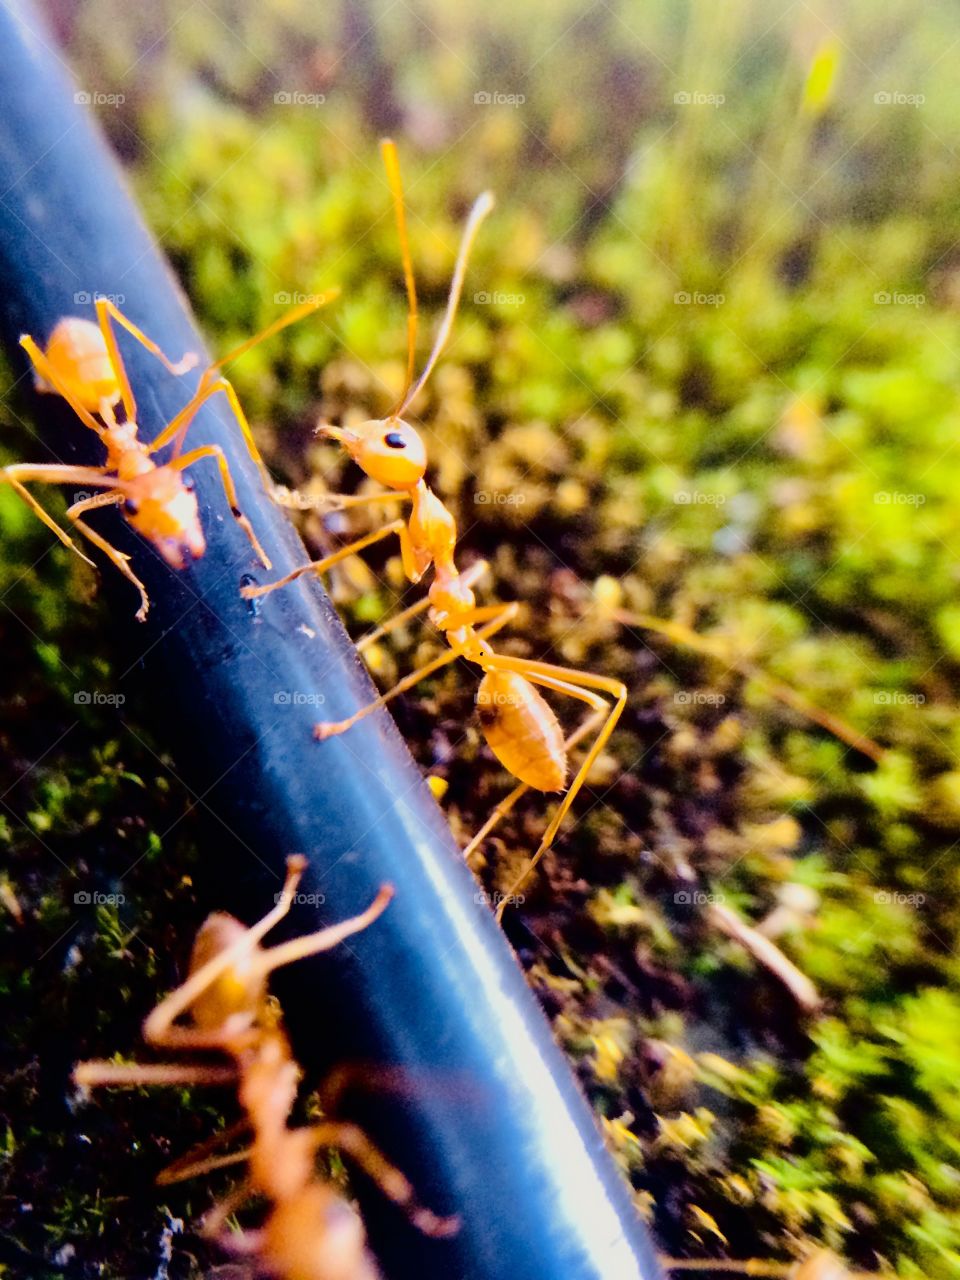 Ant macro wallpaper